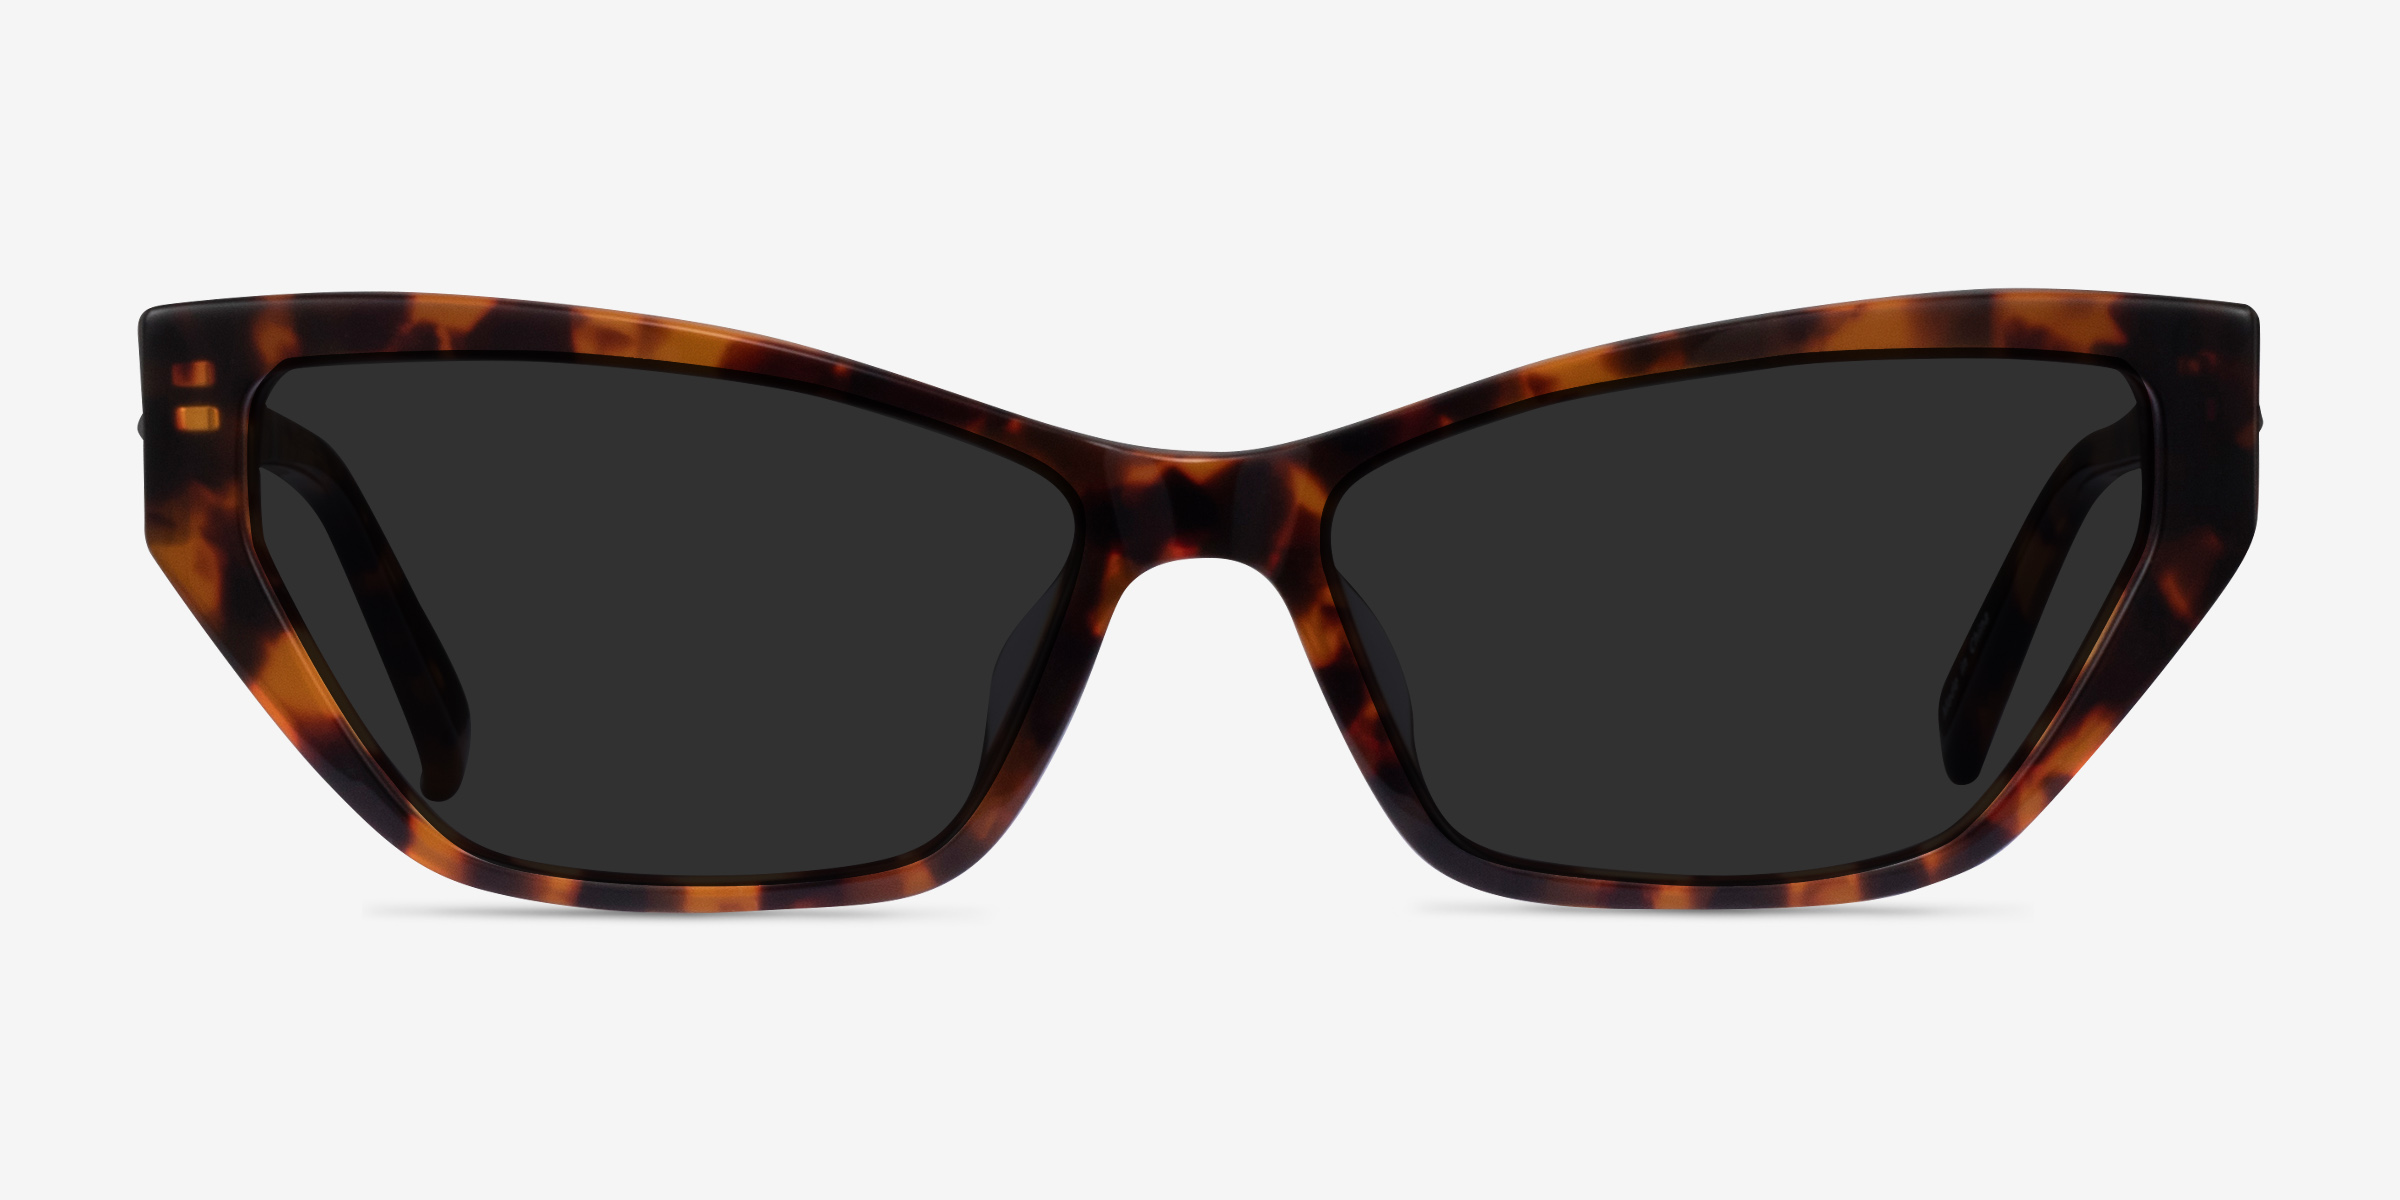 Hera - Cat Eye Brown Tortoise Frame Sunglasses For Women | Eyebuydirect